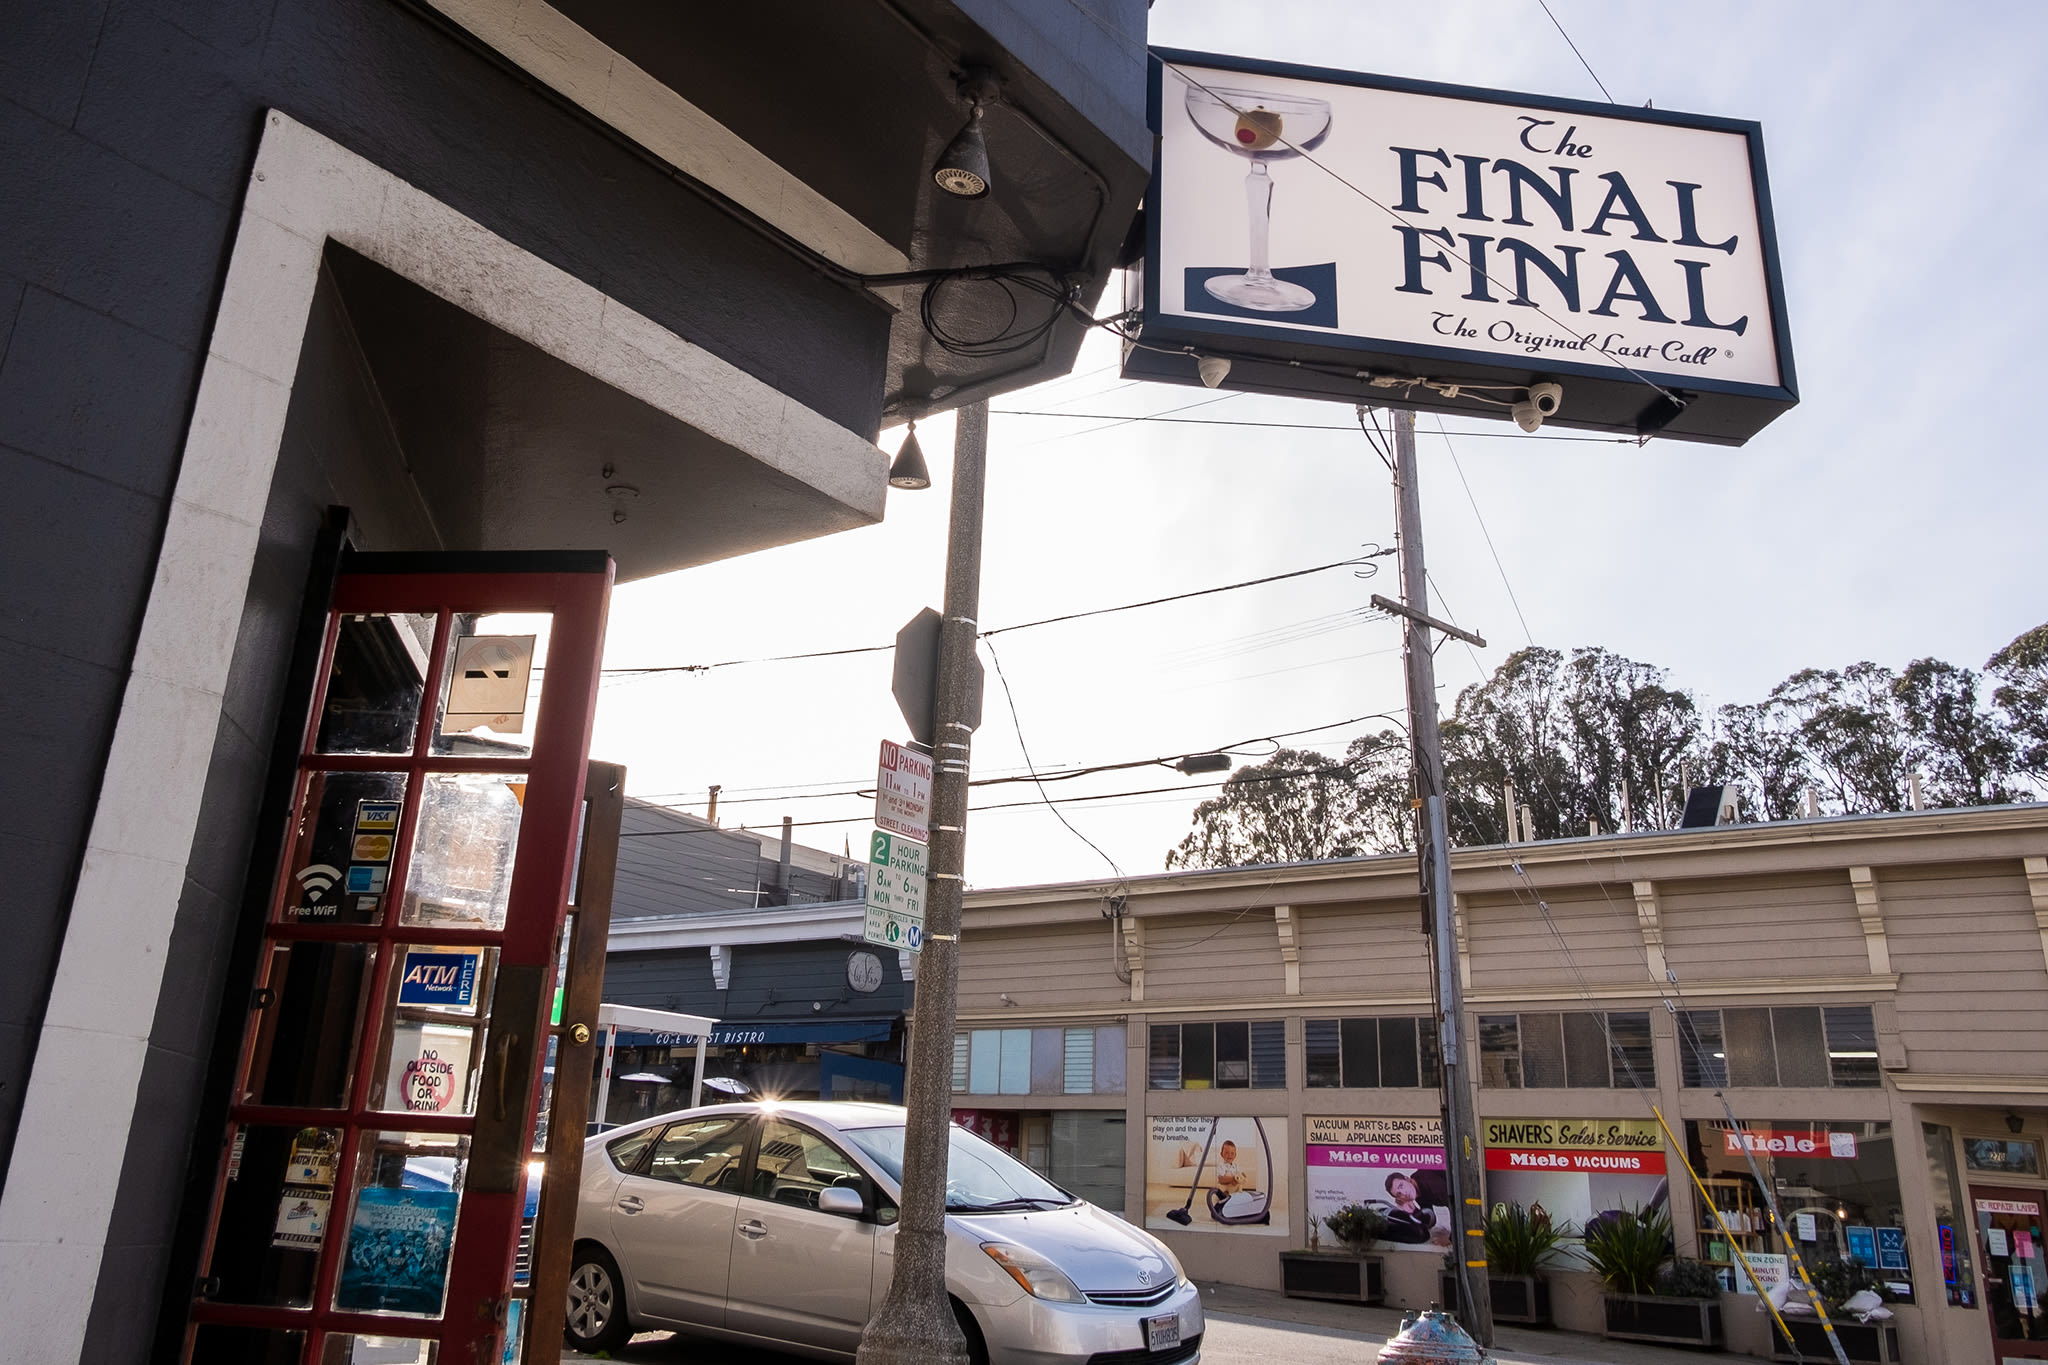 Family sells legendary San Franicsco sports bar, leaves state